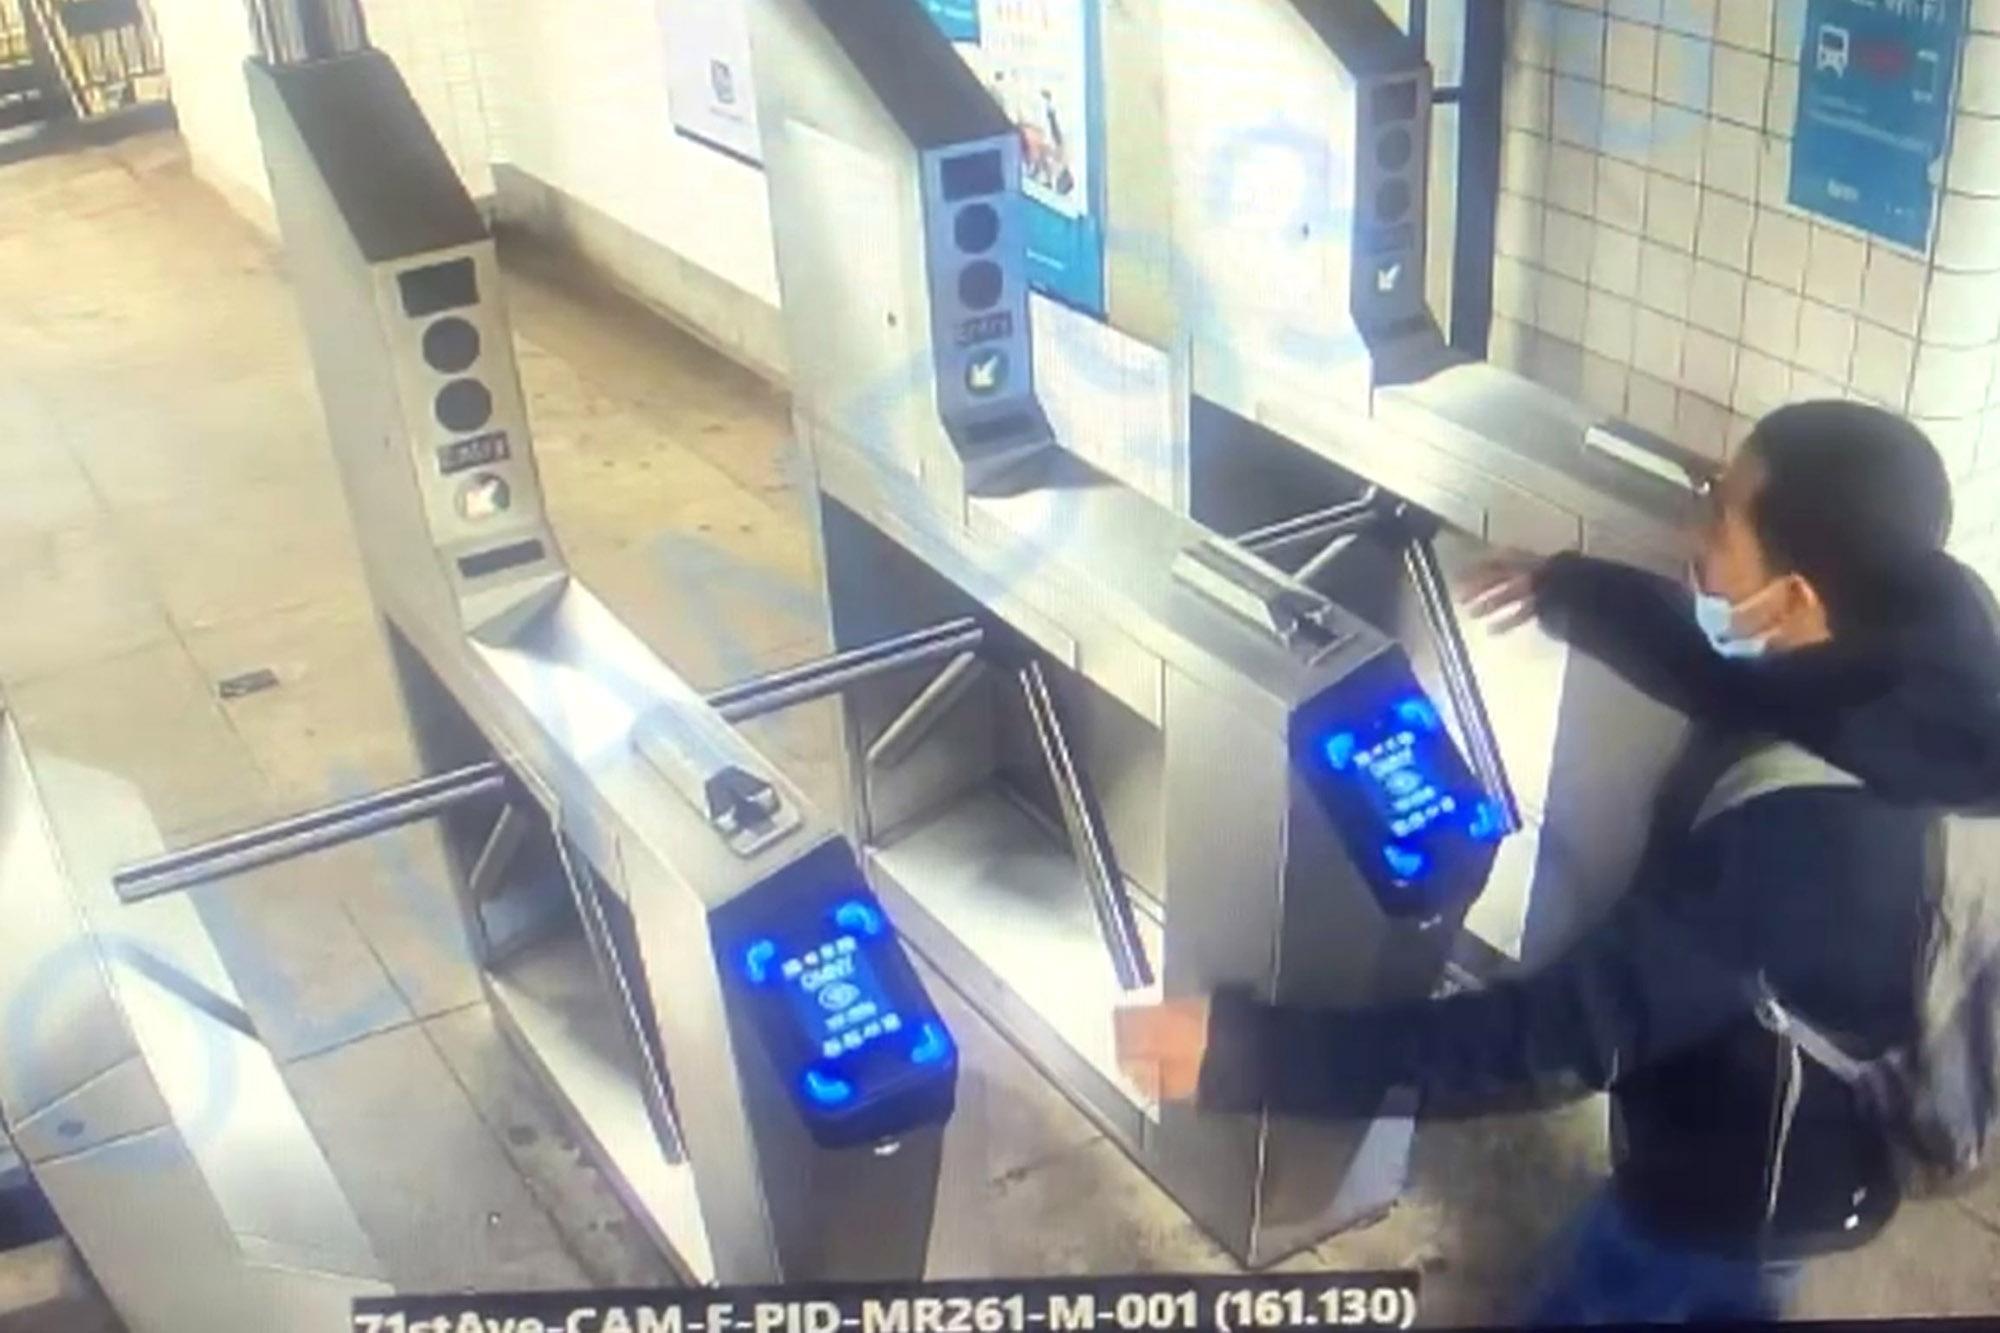 Un american a murit încercând să sară peste turnicheții de la metrou. Momentul tragediei a fost filmat